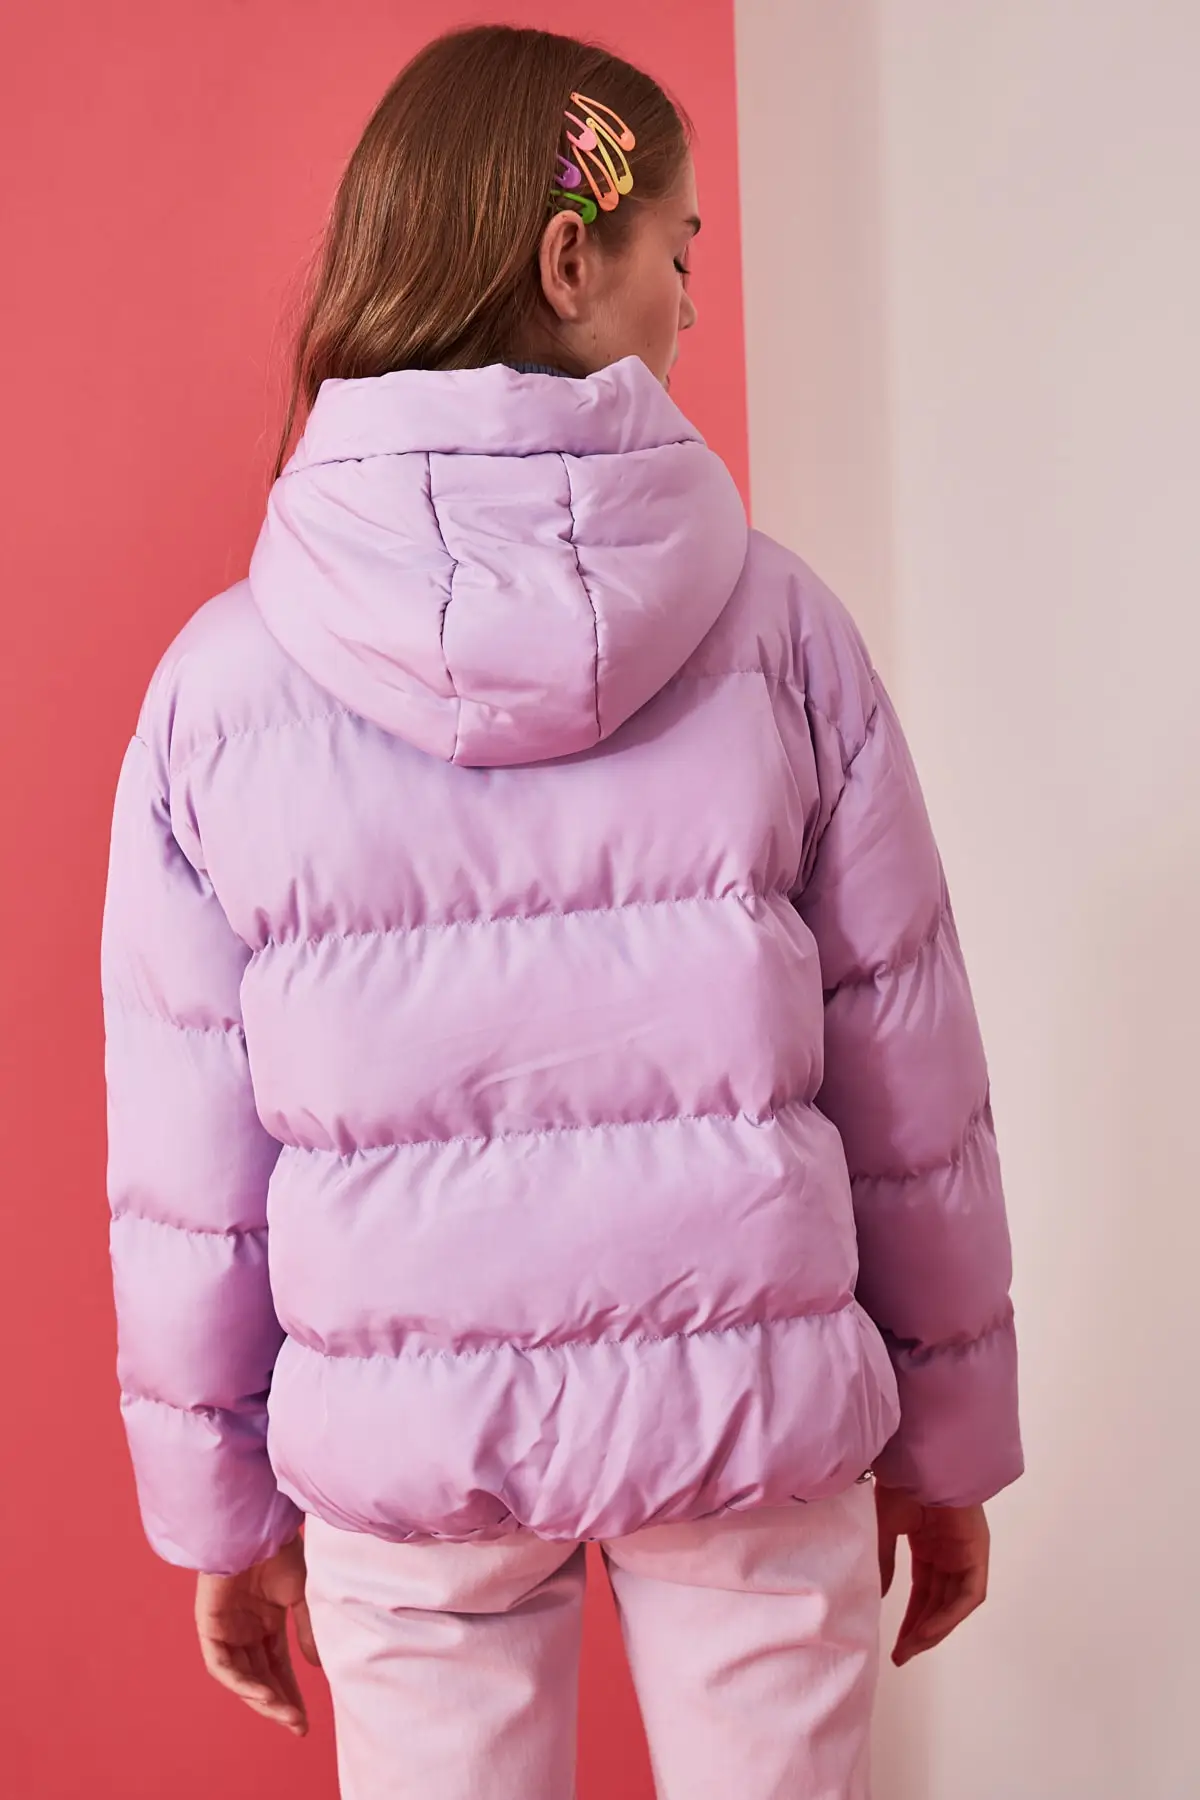 Manteau gonflable à capuche Lilac pour femmes, modèle Dimensions longueur 1.77 buste: 82, taille: 59, hanche: 88